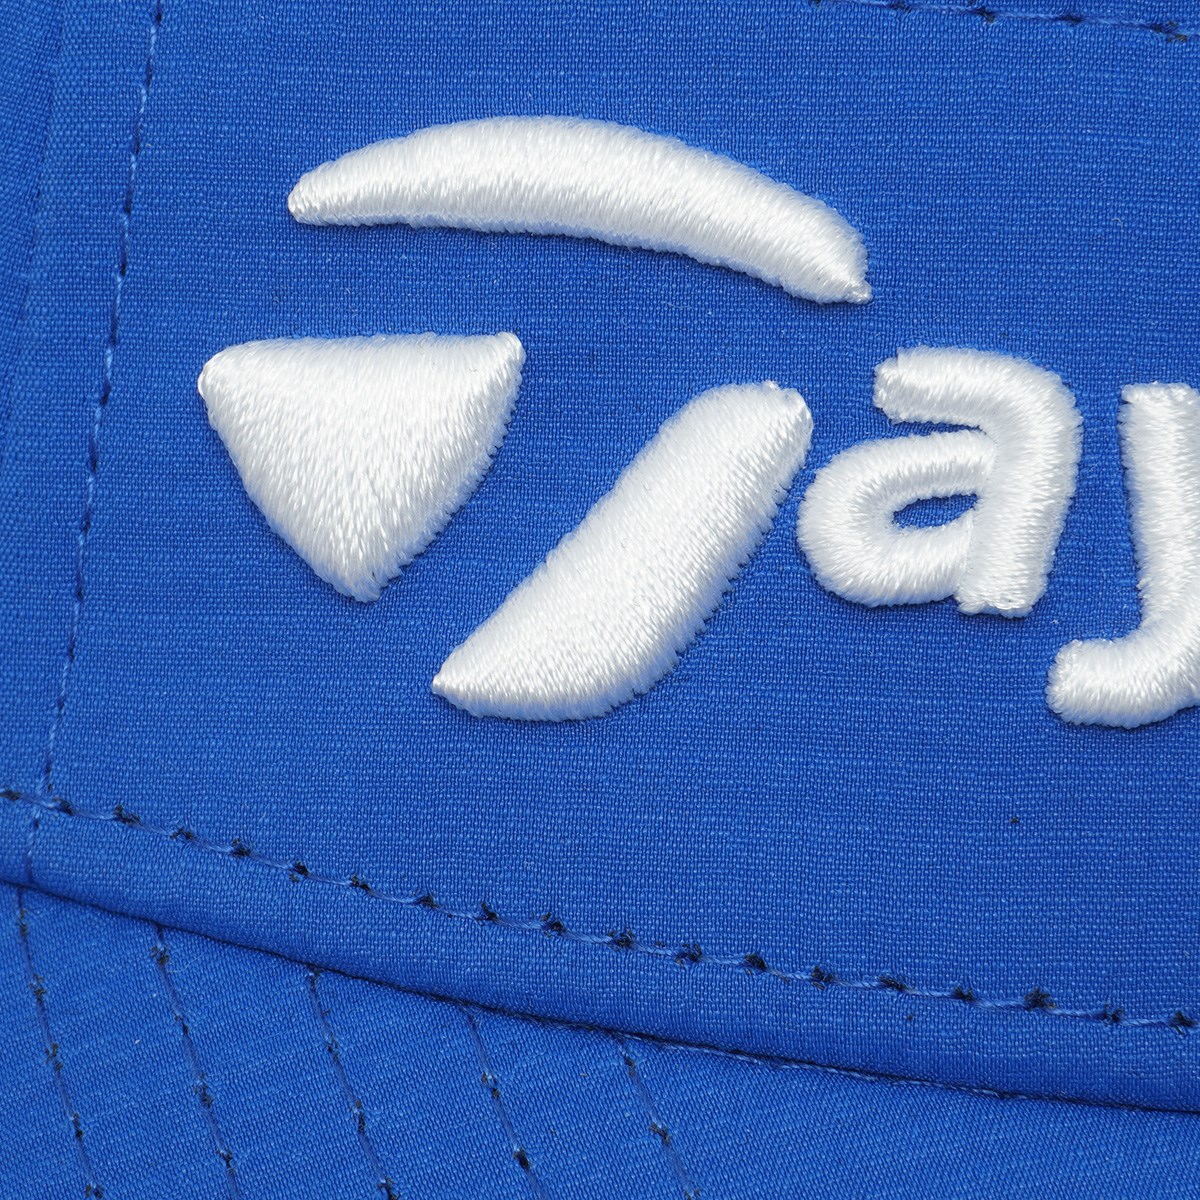 ツアーレーダーサンバイザー(【男性】バイザー)|Taylor Made(テーラーメイド) TD679の通販 - GDOゴルフ ショップ(0000656169)